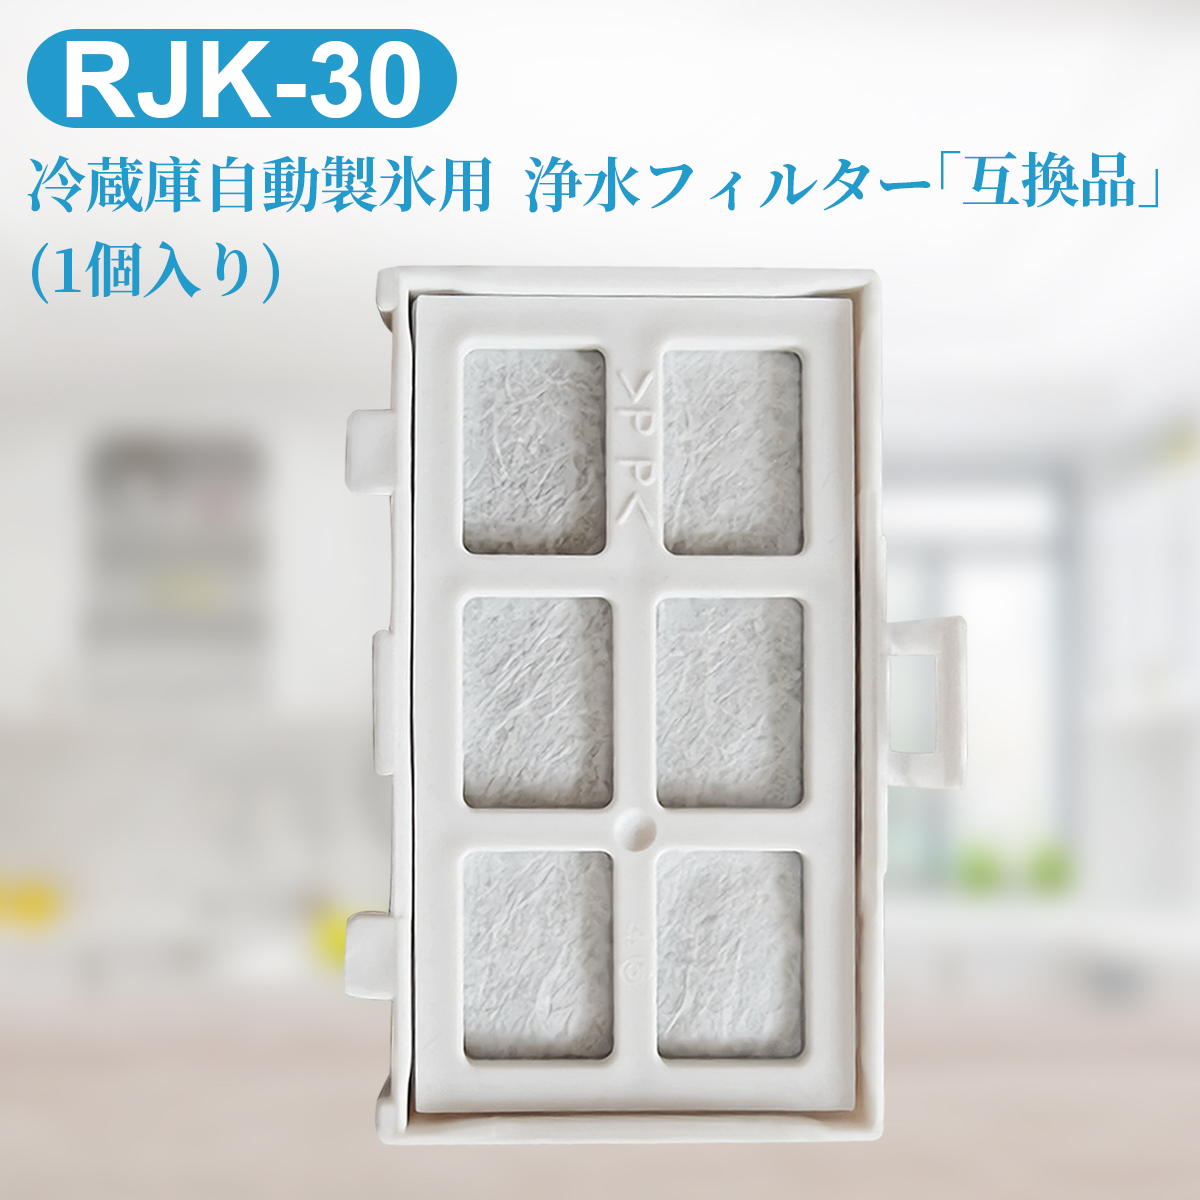 浄水フィルター rjk30 日立 冷蔵庫 製氷機フィルター RJK-30-100 冷凍冷蔵庫交換用 フィルター (互換品/1個入り）